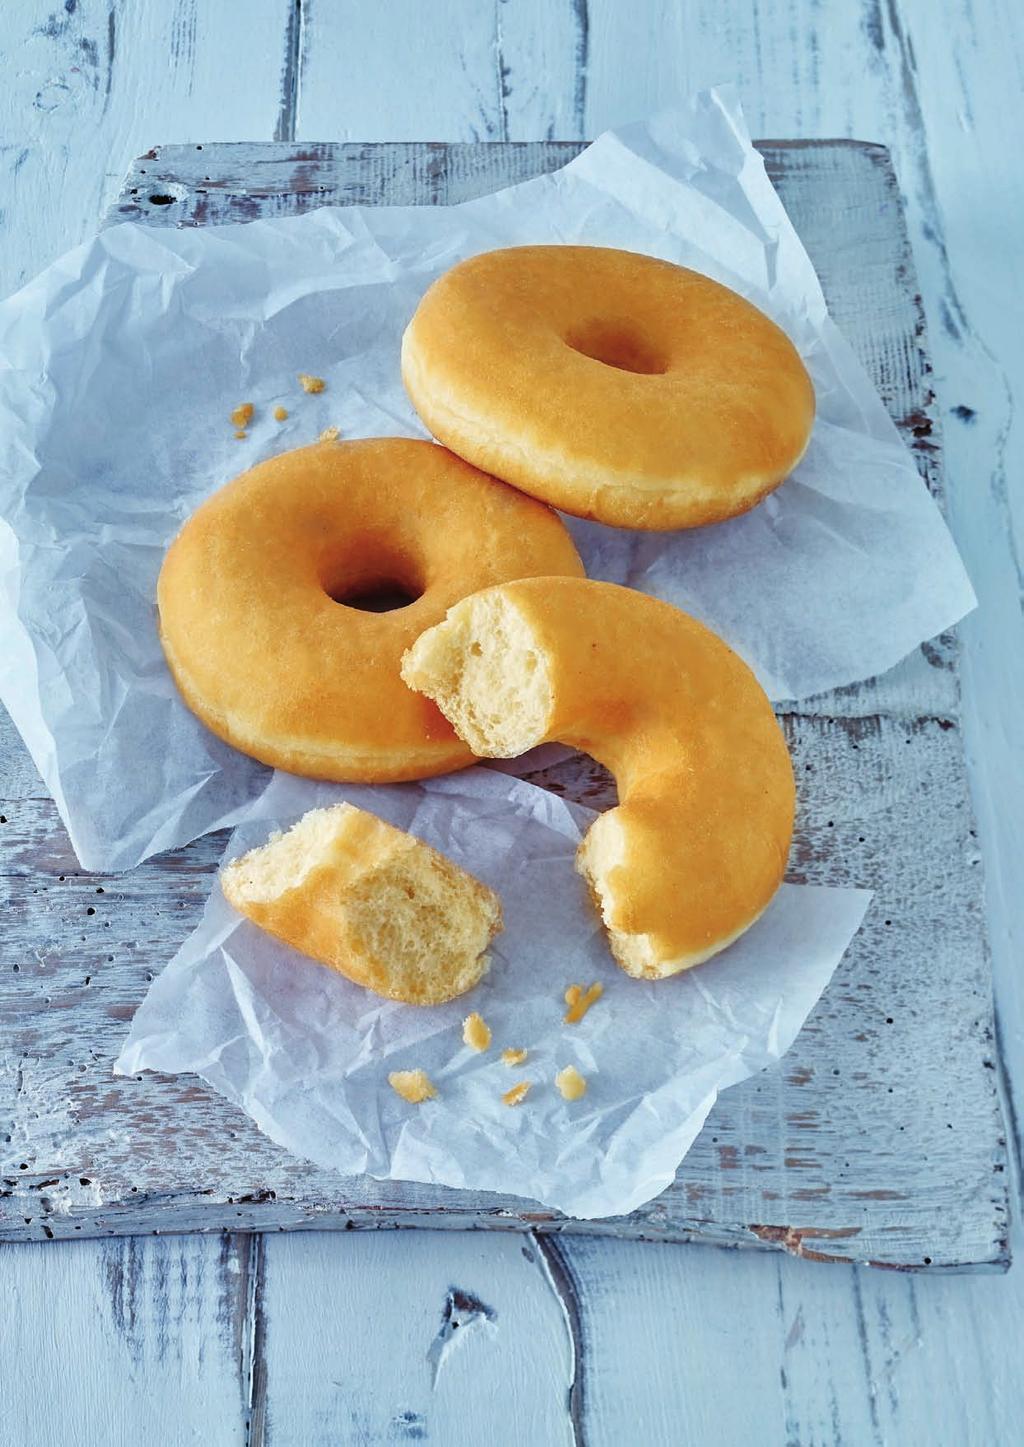 Rund um den Donut Sie sind vielseitig in Geschmack und Veredelung, handlich und für alle Altersgruppen ein Genuss: Donuts bereichern das Sortiment eines jeden Backbetriebs.